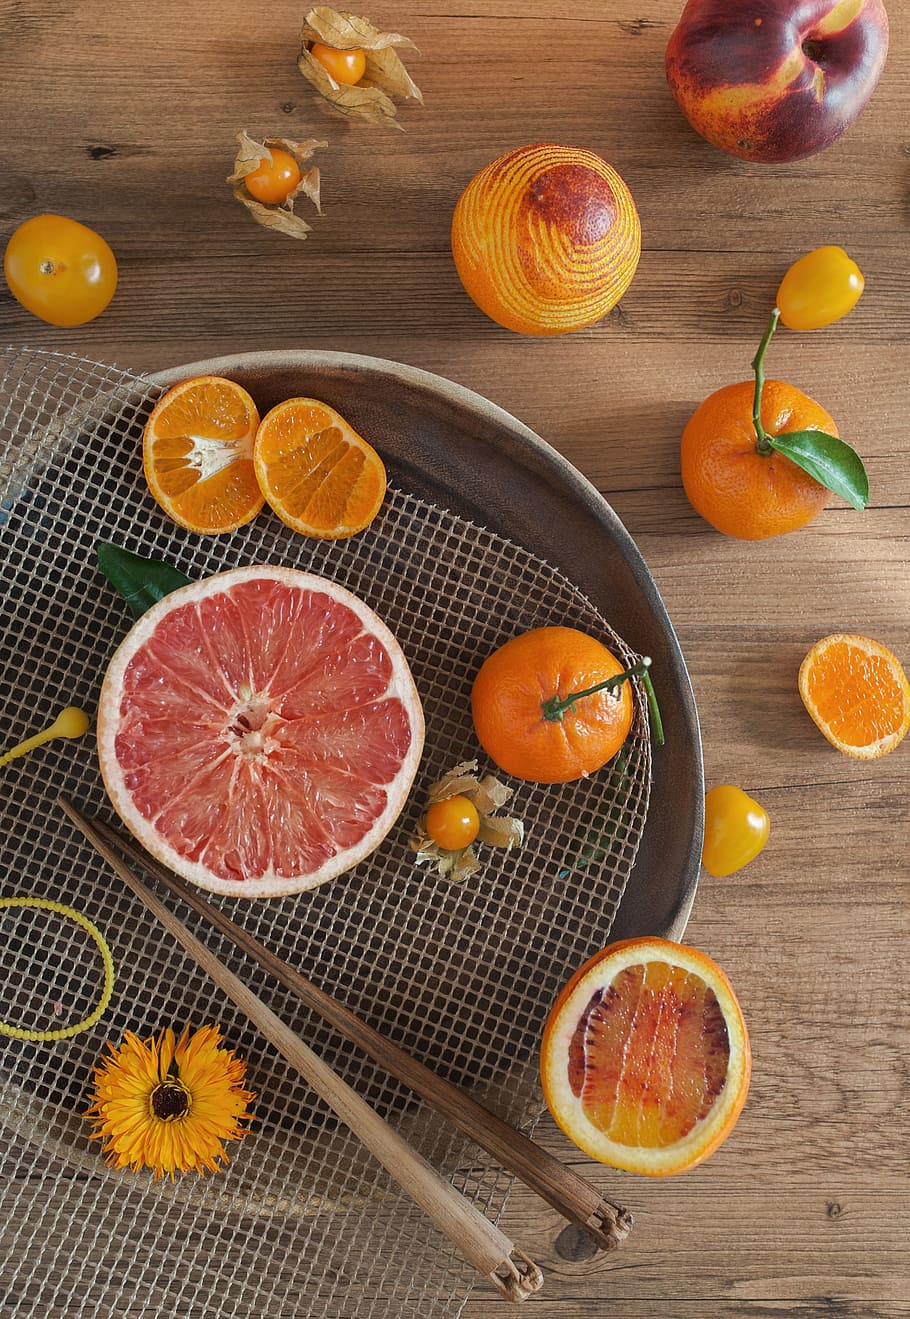 naranja, clementina, cítricos, frutas, mandarinas, flores, comida, comida y bebida, alimentación saludable, color naranja